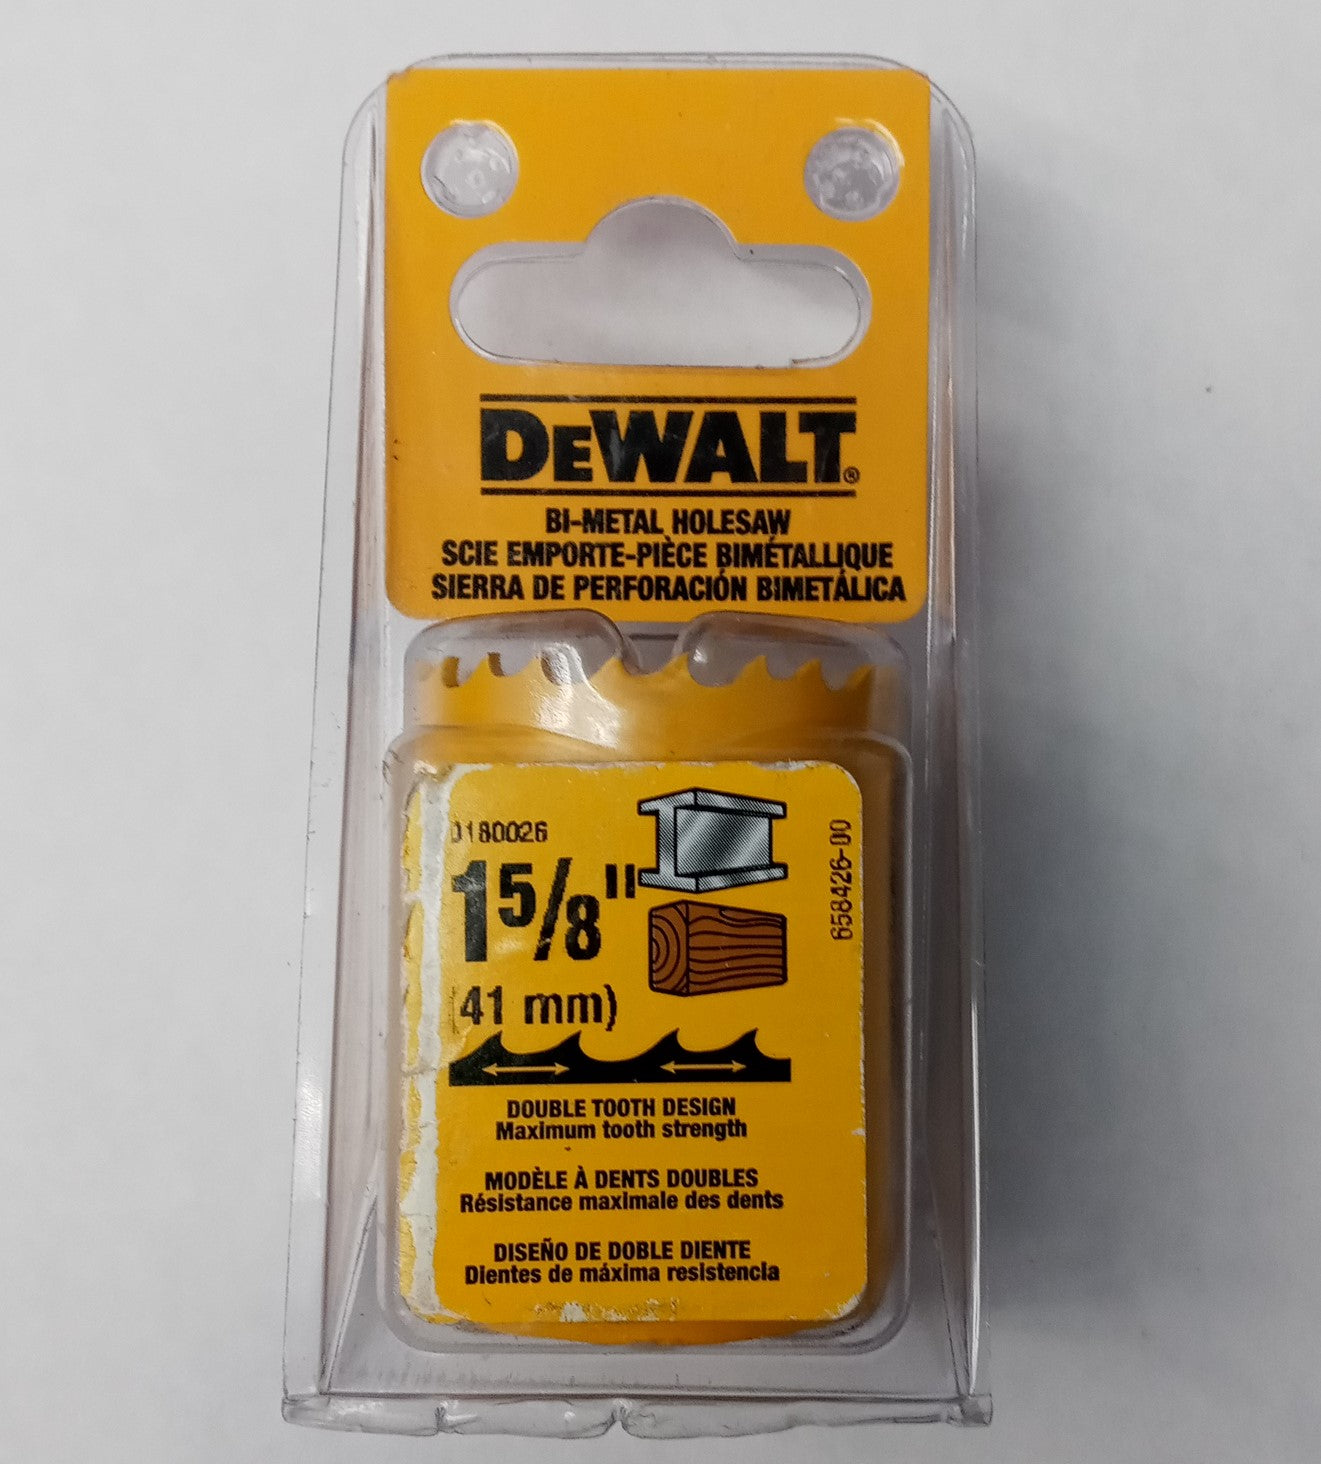 DeWalt D180026 1-5/8" (41mm) Bi-Metal Holesaw USA